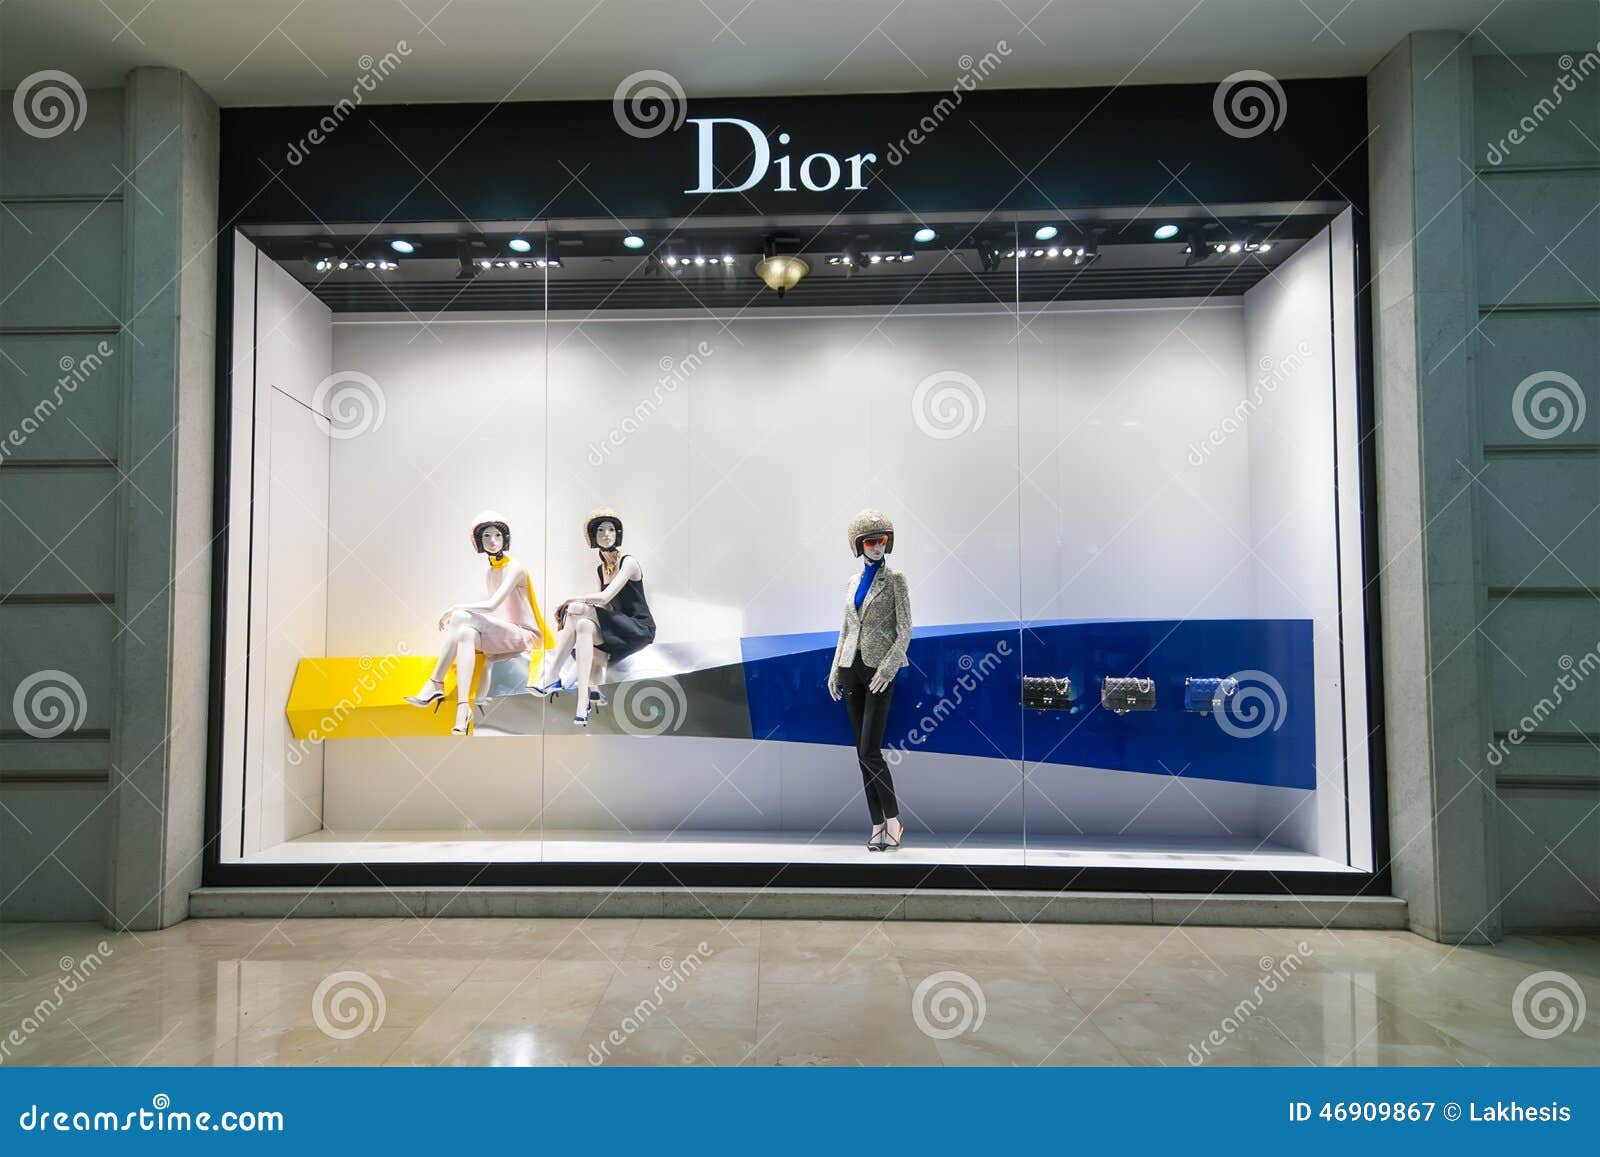 Thăm quan boutique Dior mới nhất tại Hà Nội qua ảnh  Tập đoàn dệt may Việt  Nam